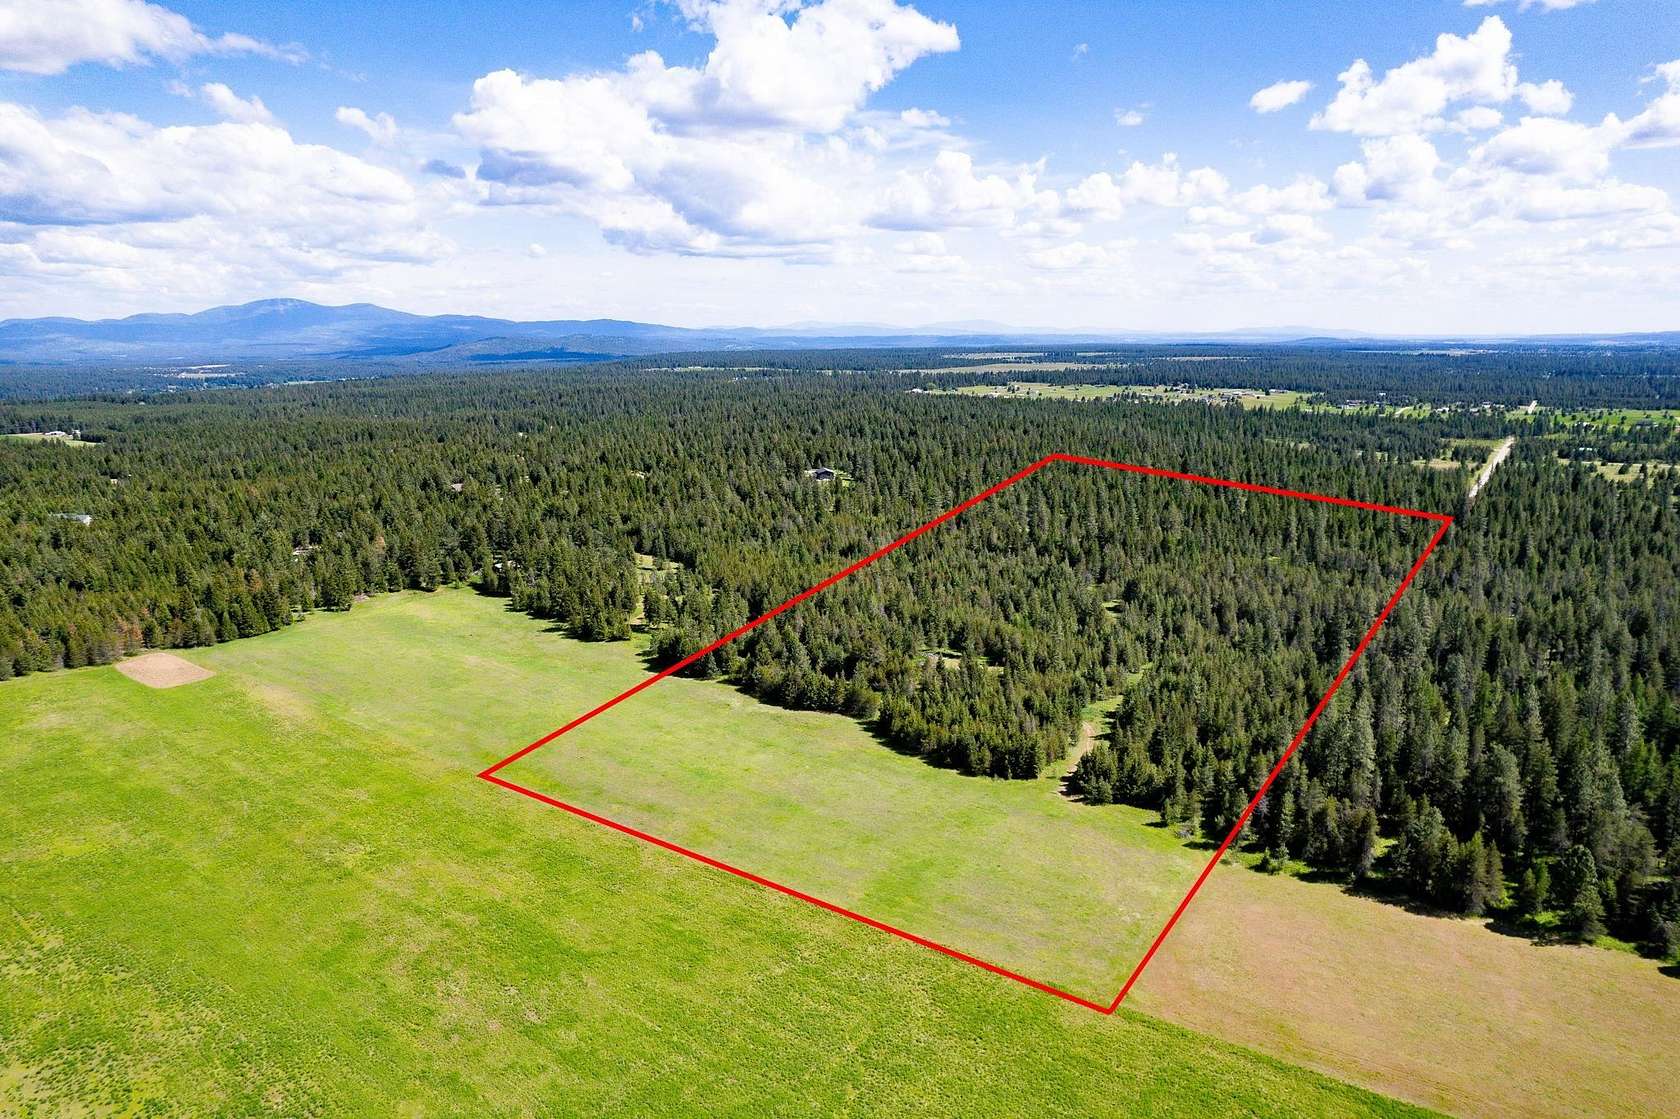 20 Acres of Land for Sale in Deer Park, Washington